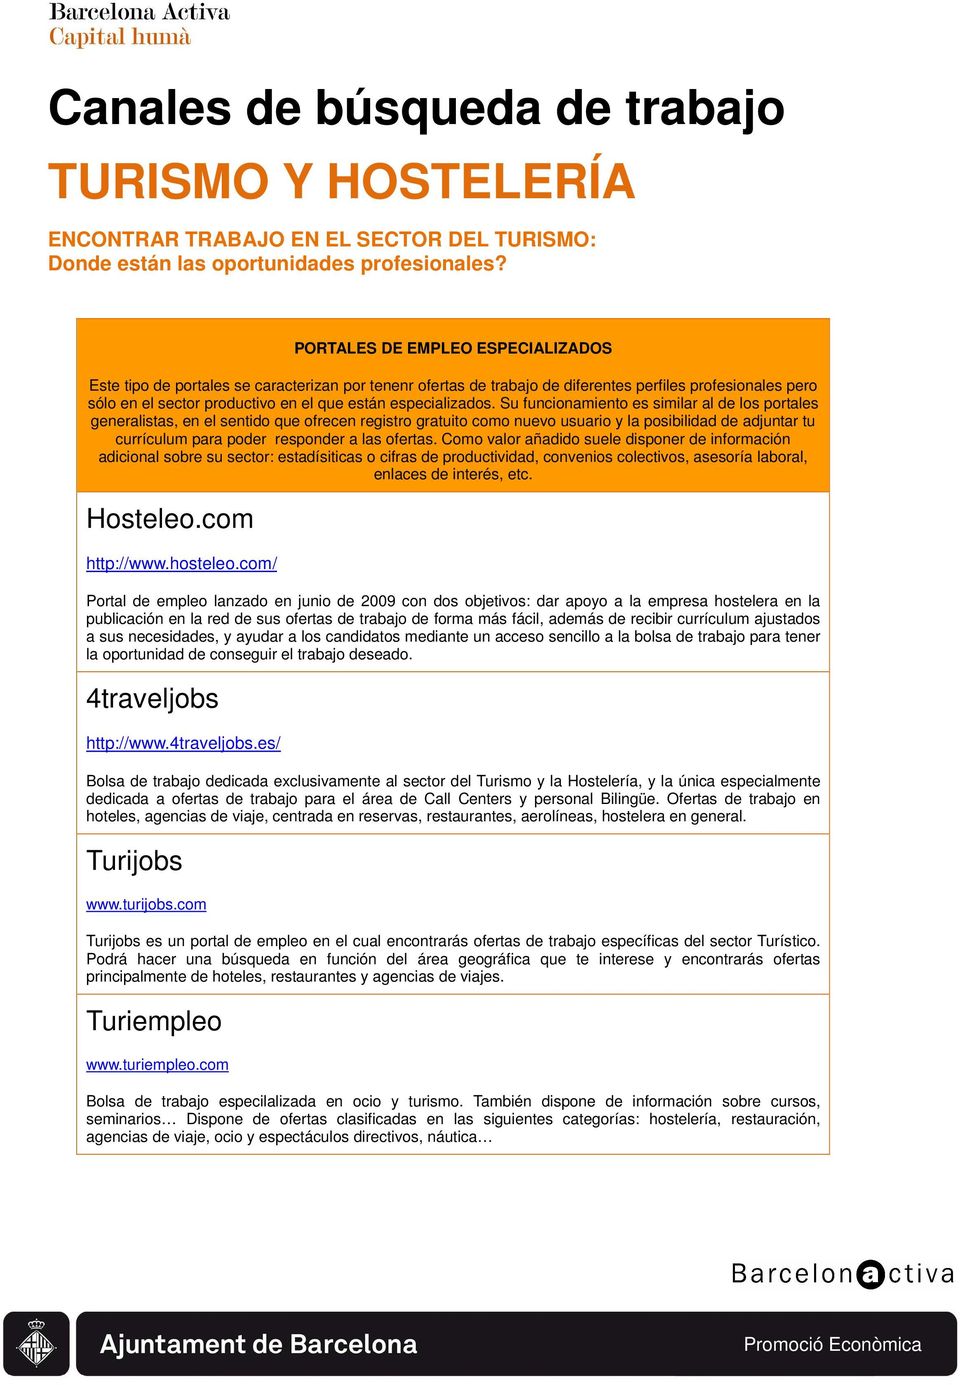 Canales búsqueda de trabajo TURISMO Y HOSTELERÍA PDF libre